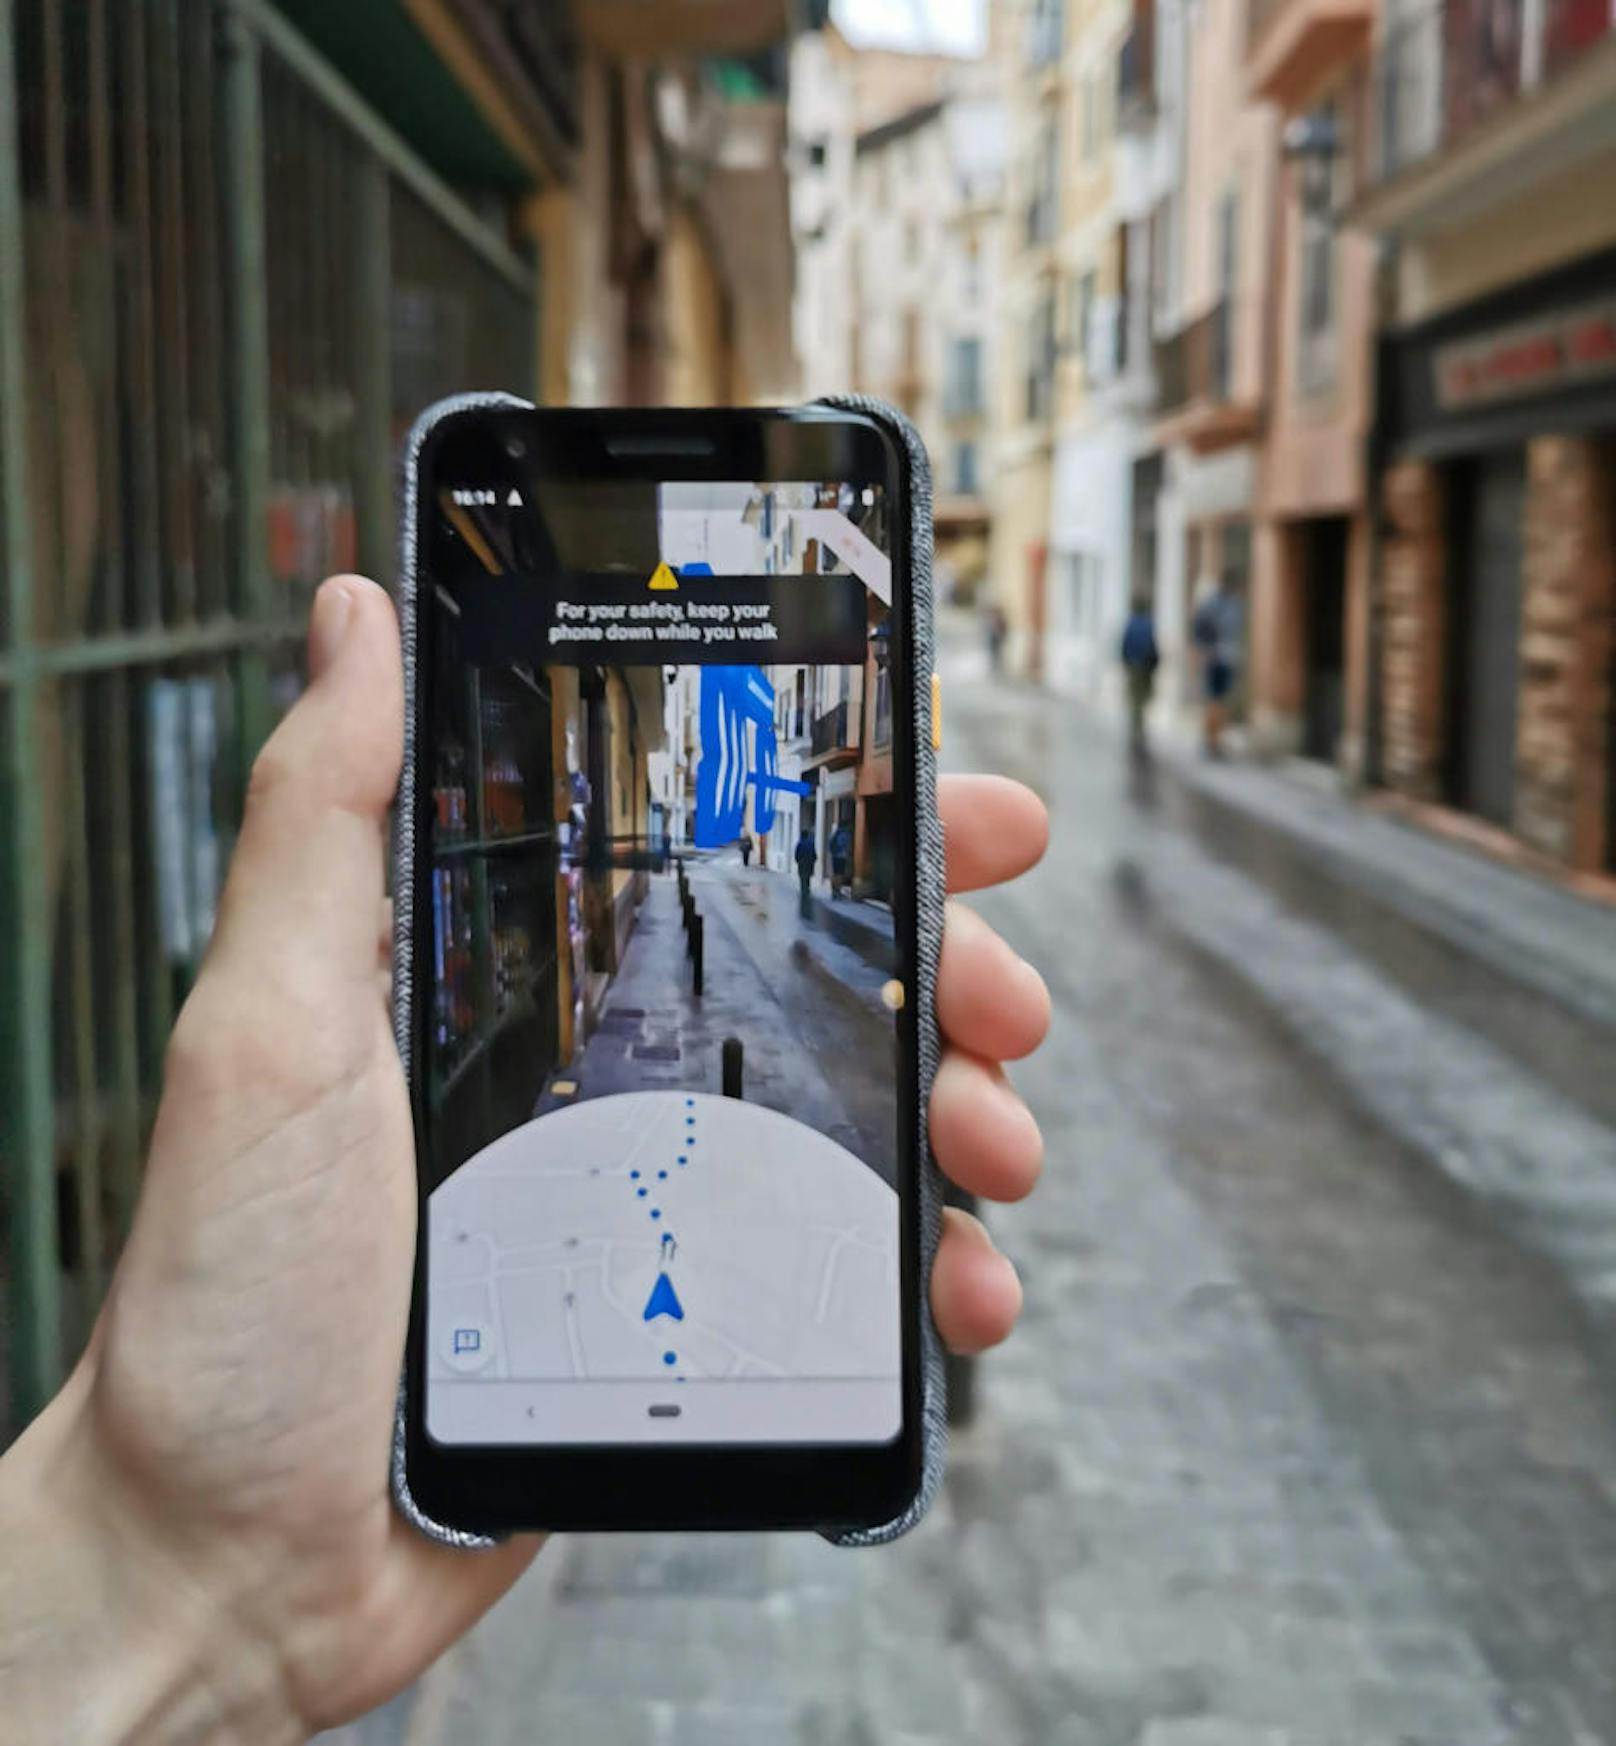 Derzeit testet Google ein neues Feature für Google Maps in einer offenen Beta. "Live View" ist in der Google-Maps-App auf allen Smartphones verfügbar, die Augmented Reality unterstützen und erleichtert die Navigation, wenn man zu Fuß unterwegs ist.